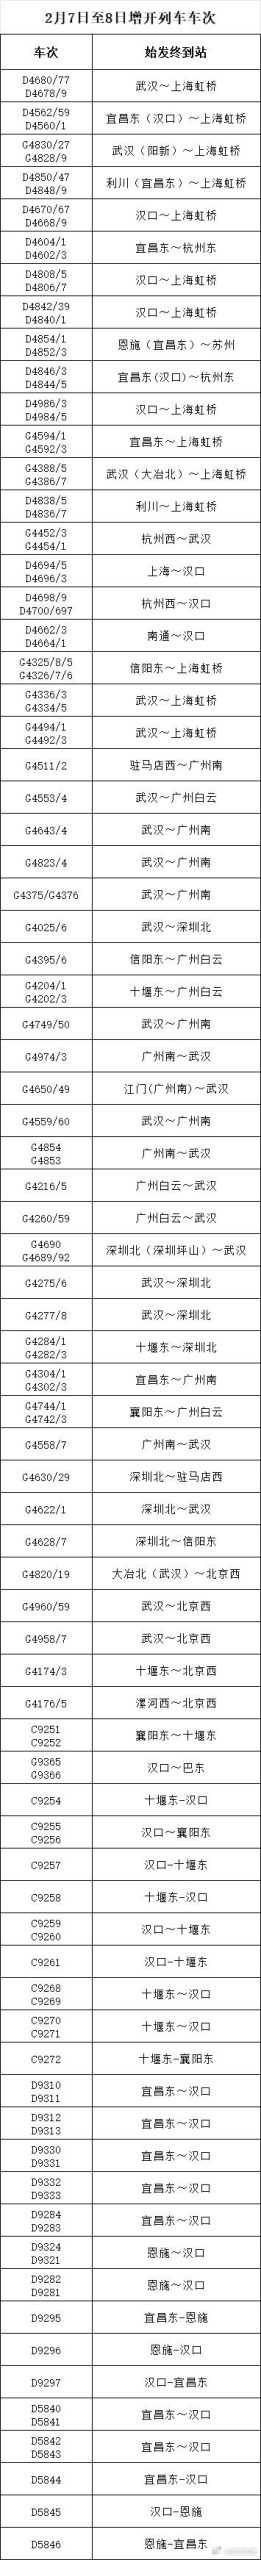 武汉铁路运输秩序基本恢复 增开71.5对夜间高铁-公闻财经